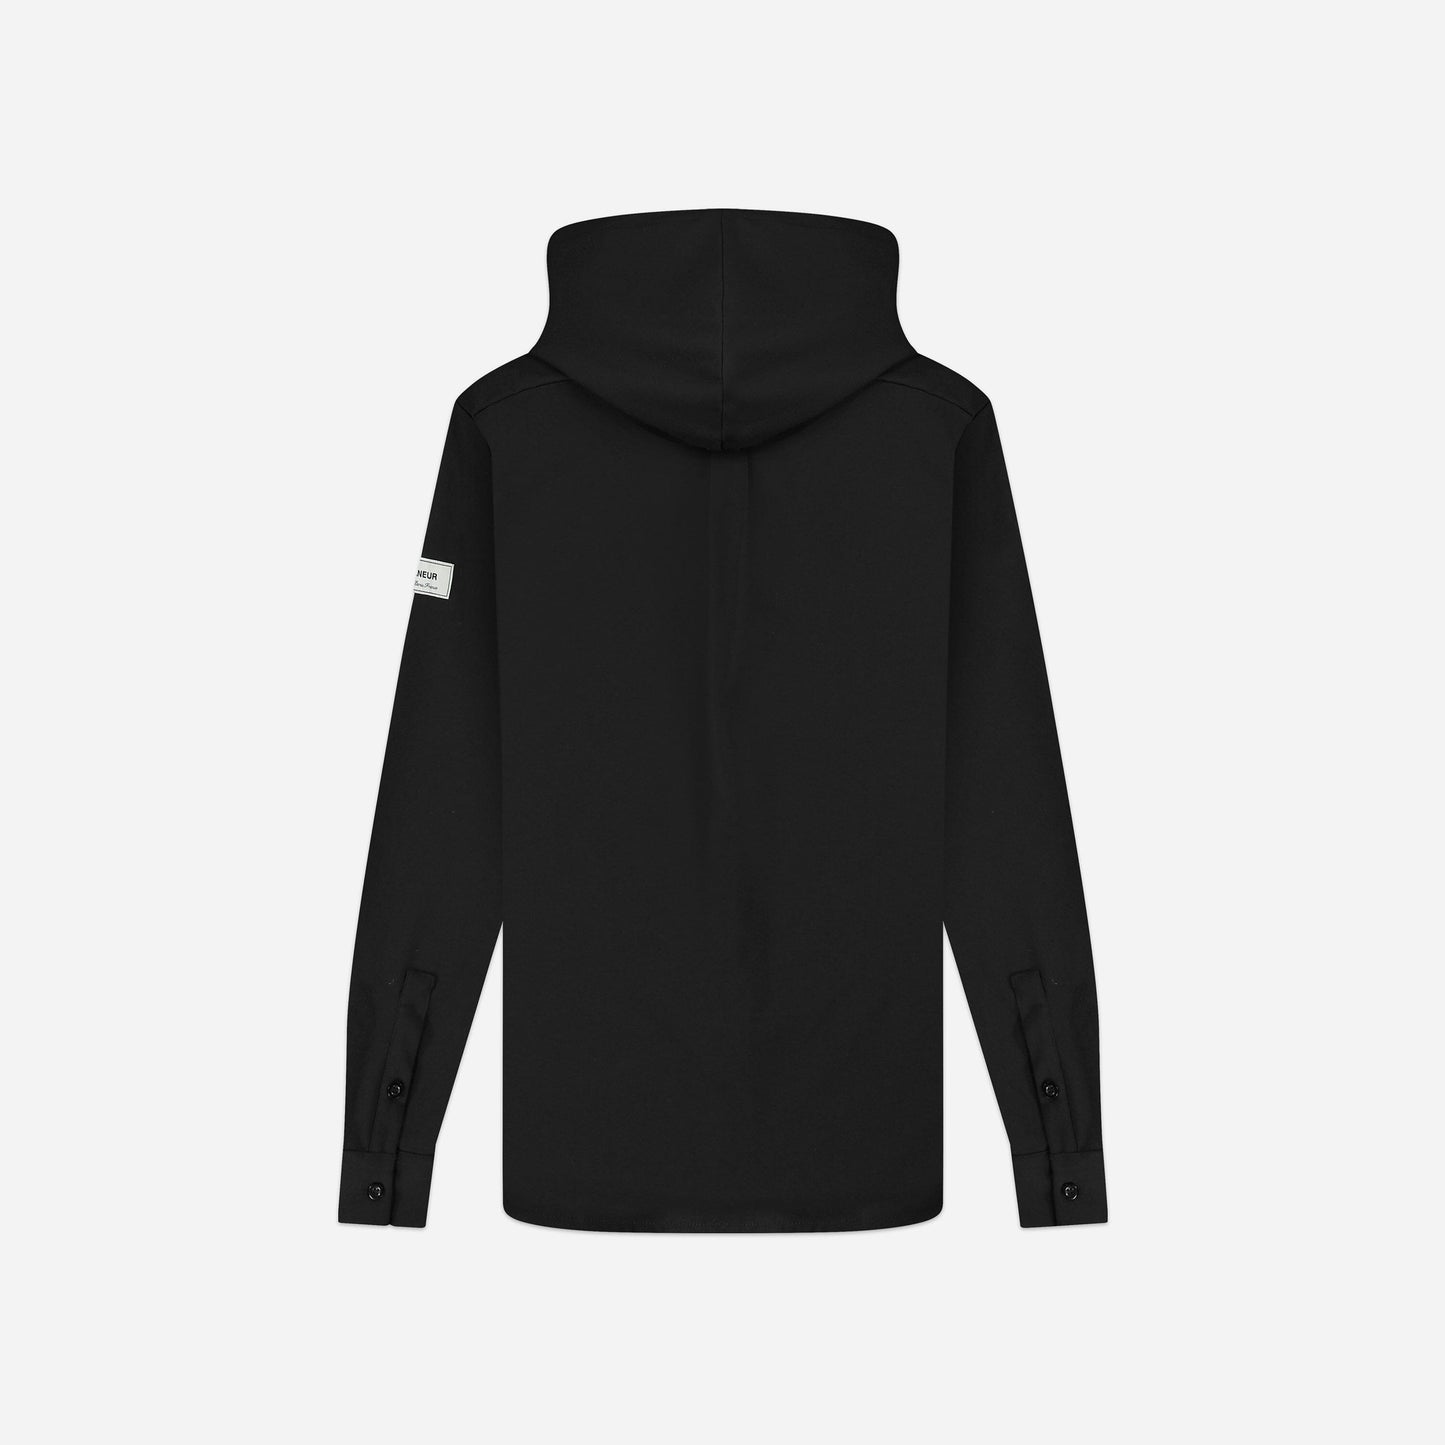 Atelier Hooded Shirt Black